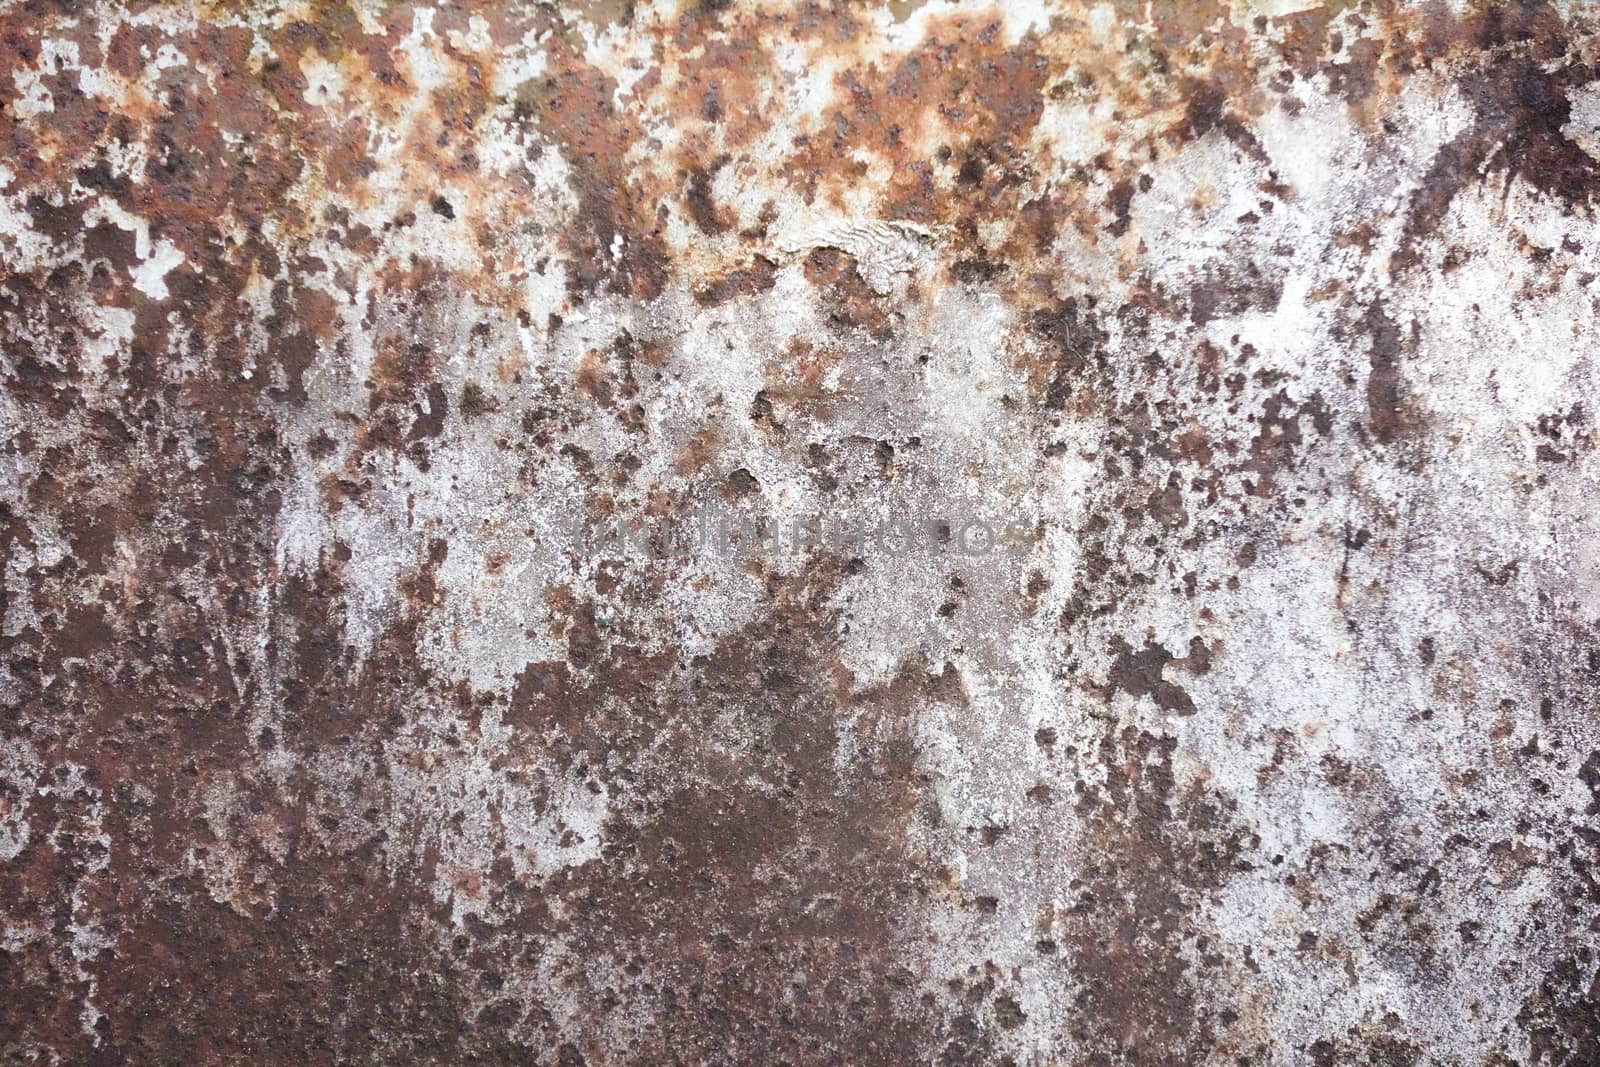 Dark worn rusty metal texture background.